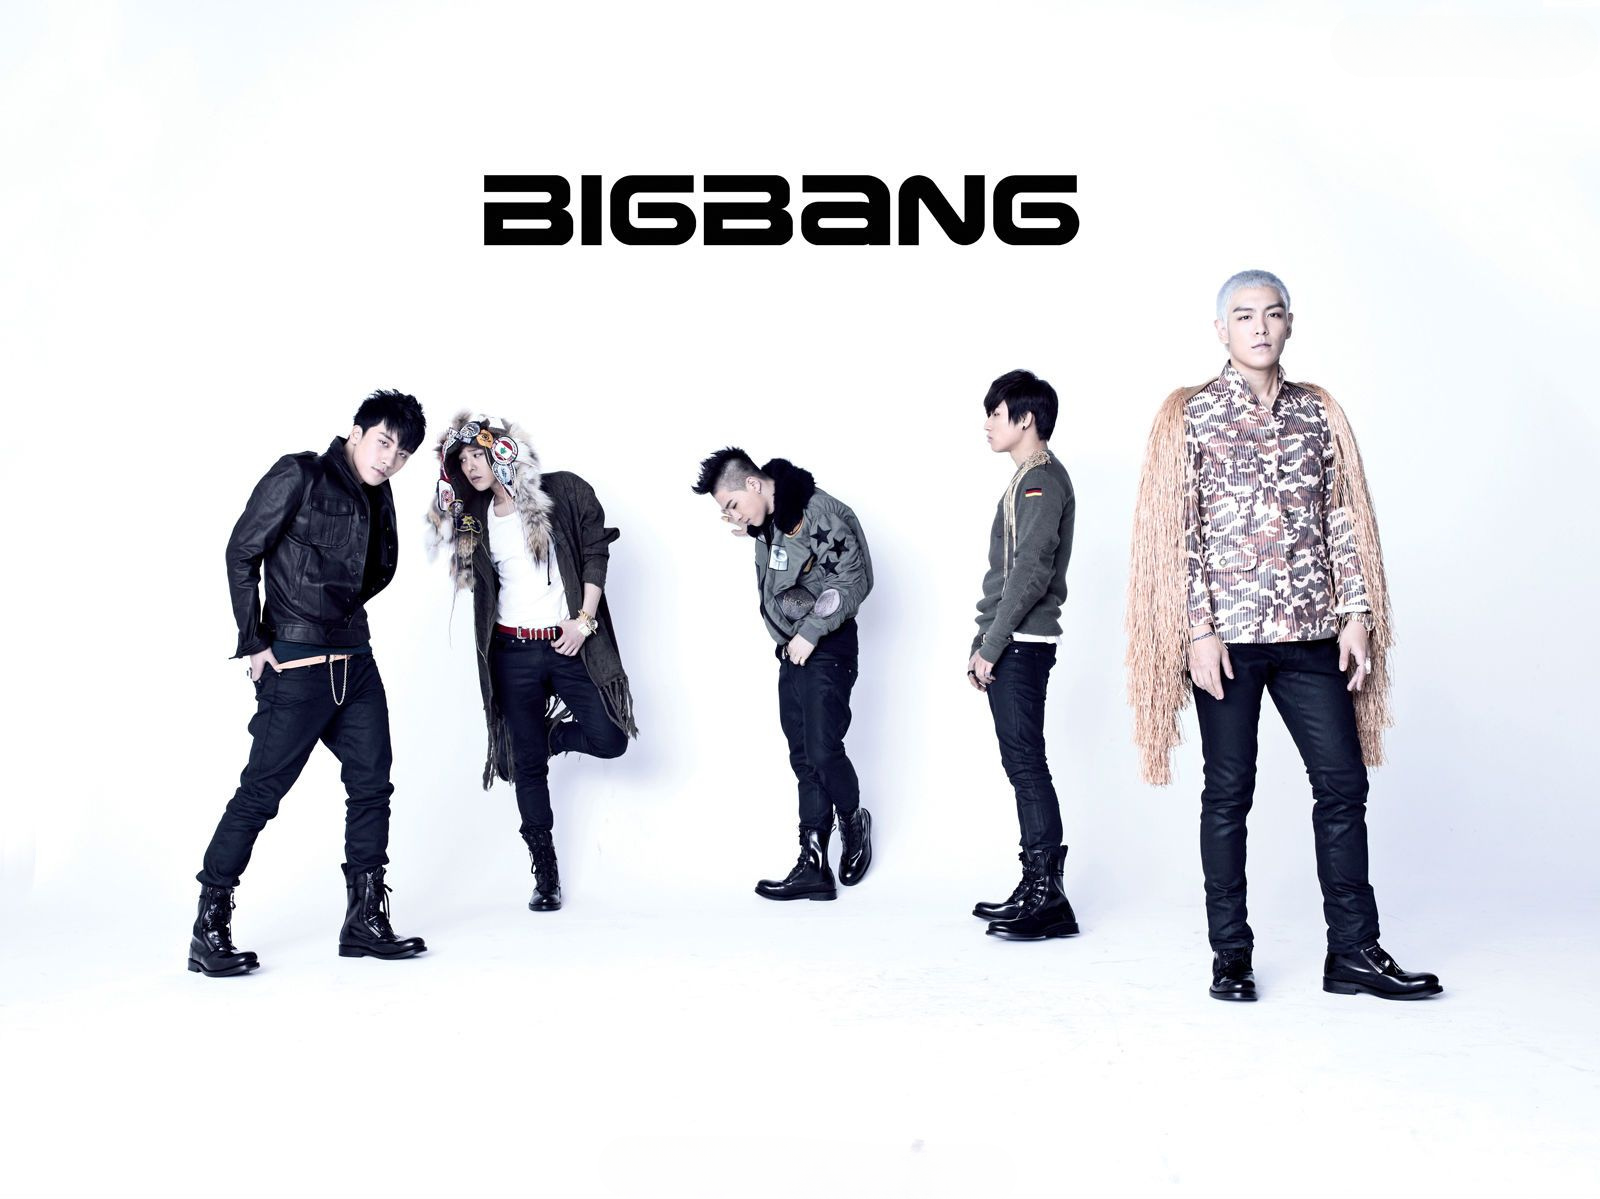 Alle5 Medlemmer Af Bigbang: G-dragon, T.o.p, Taeyang, Daesung Og Seungri.